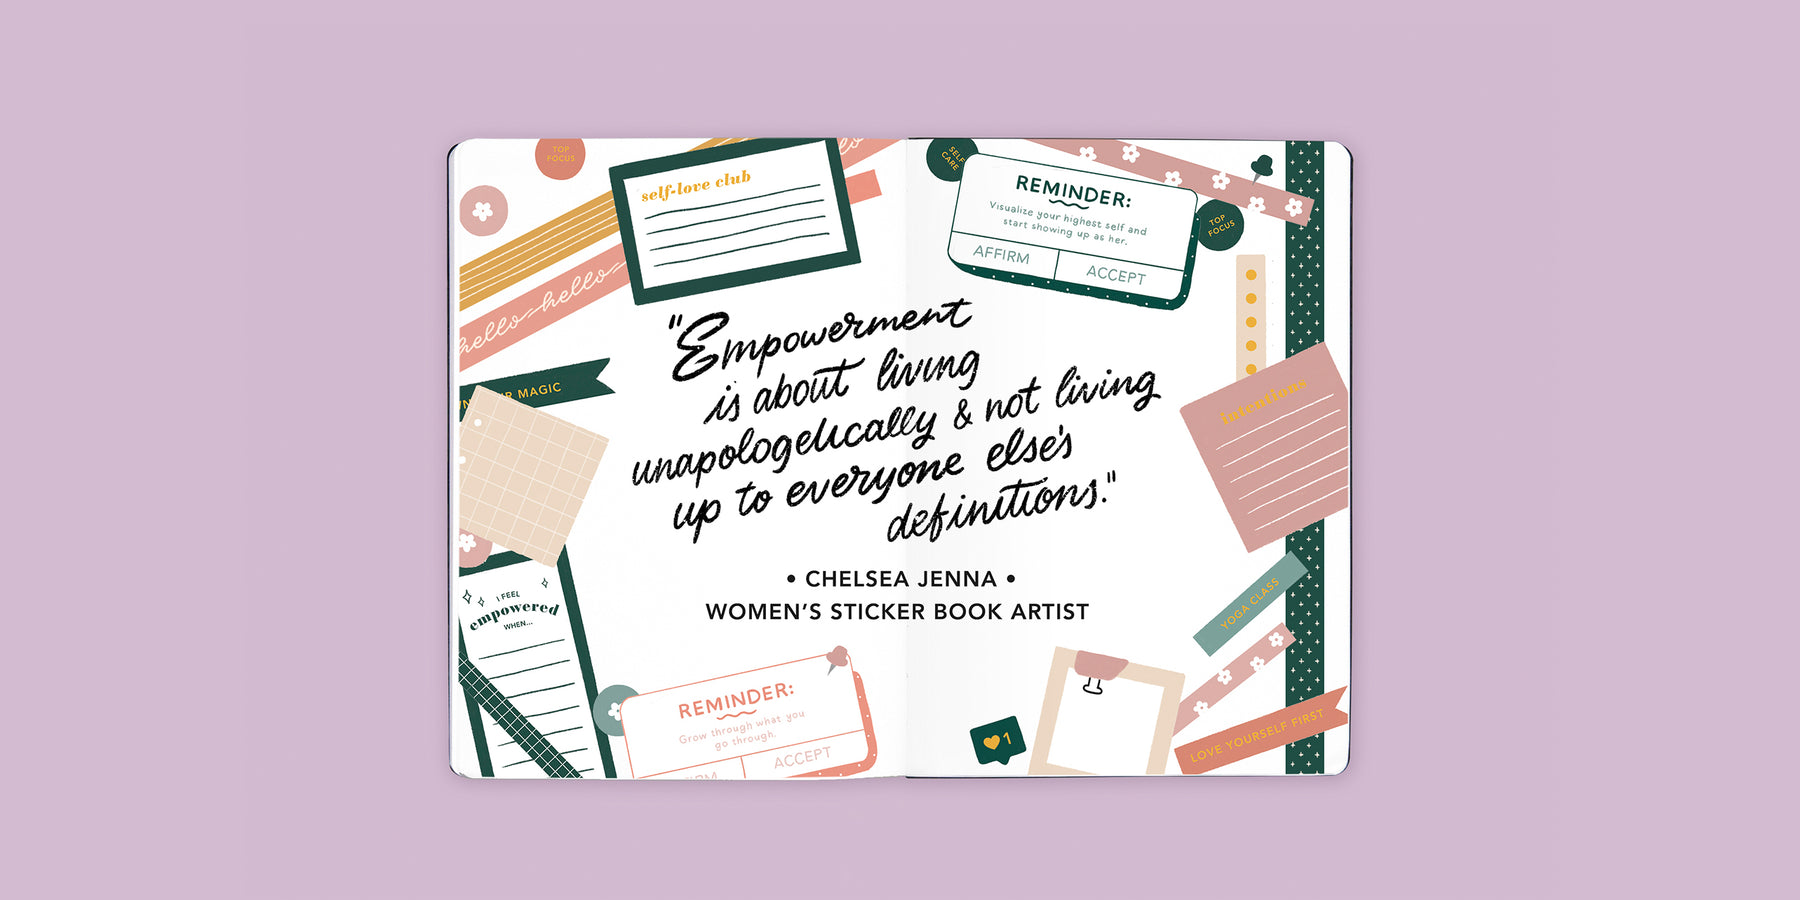 Sticker Book Artist Interview: Chelsea Jenna